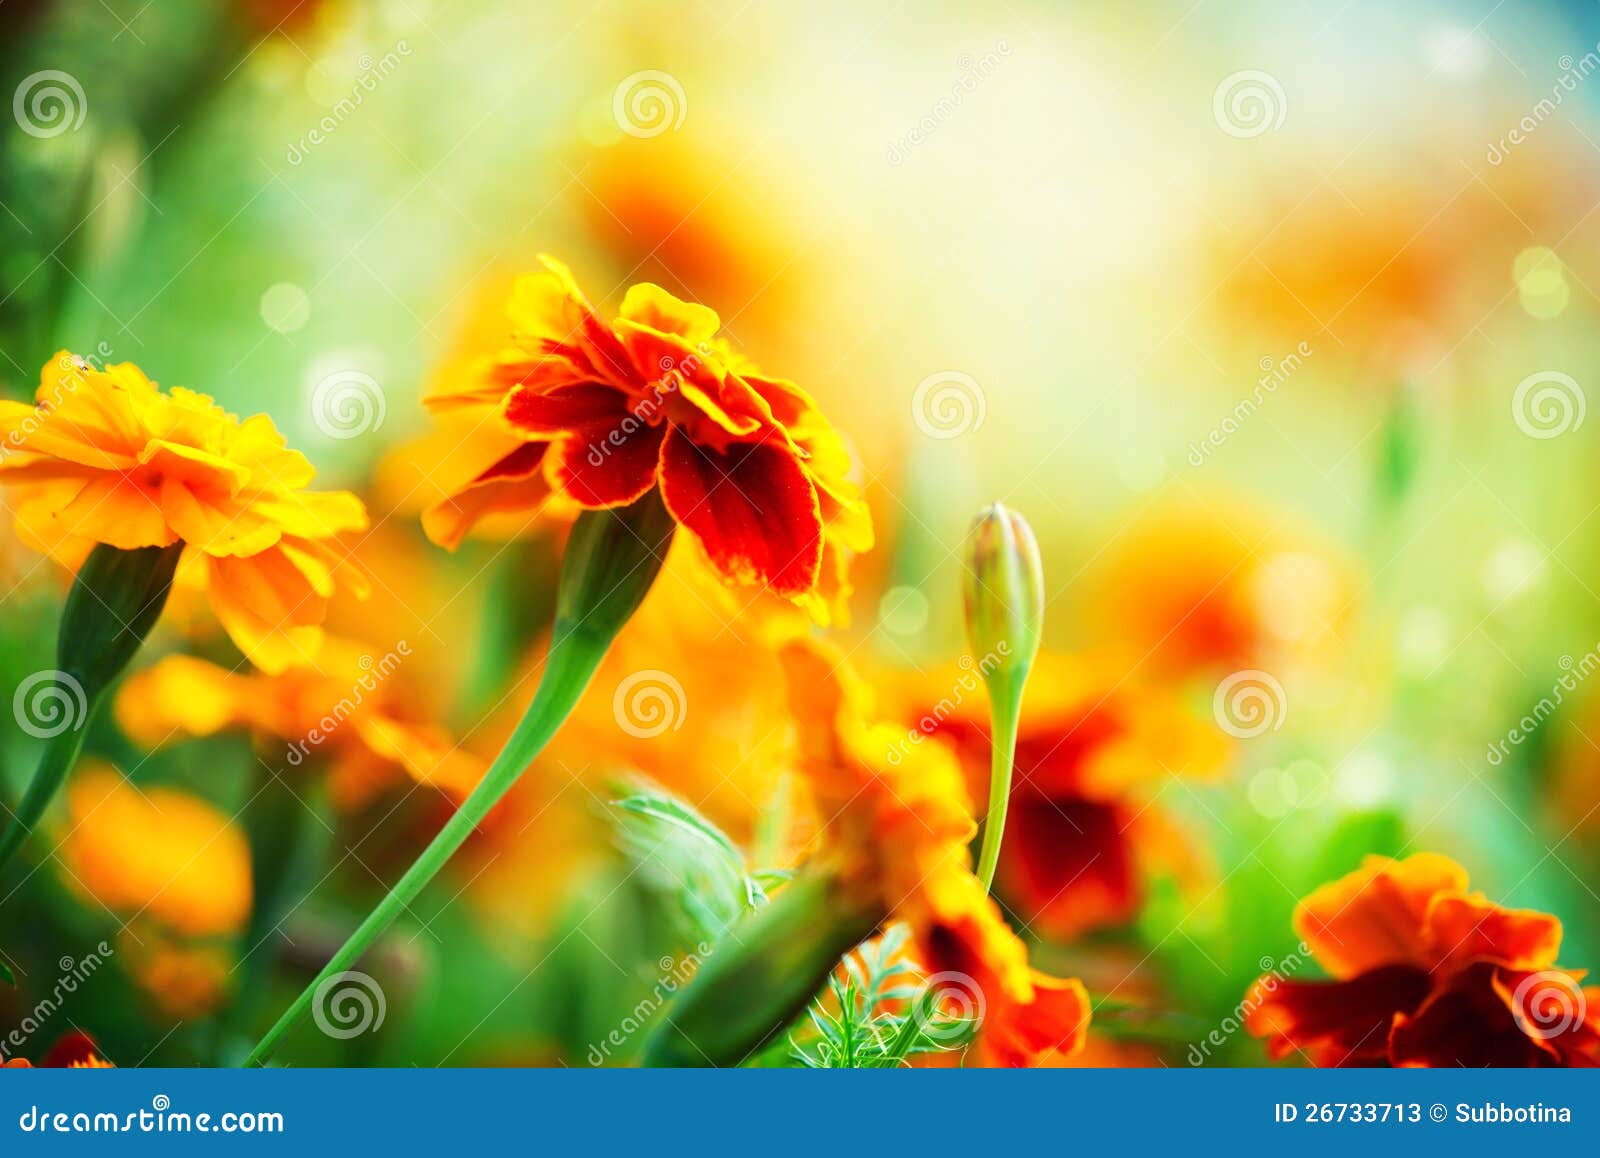 tagetes marigold flowers